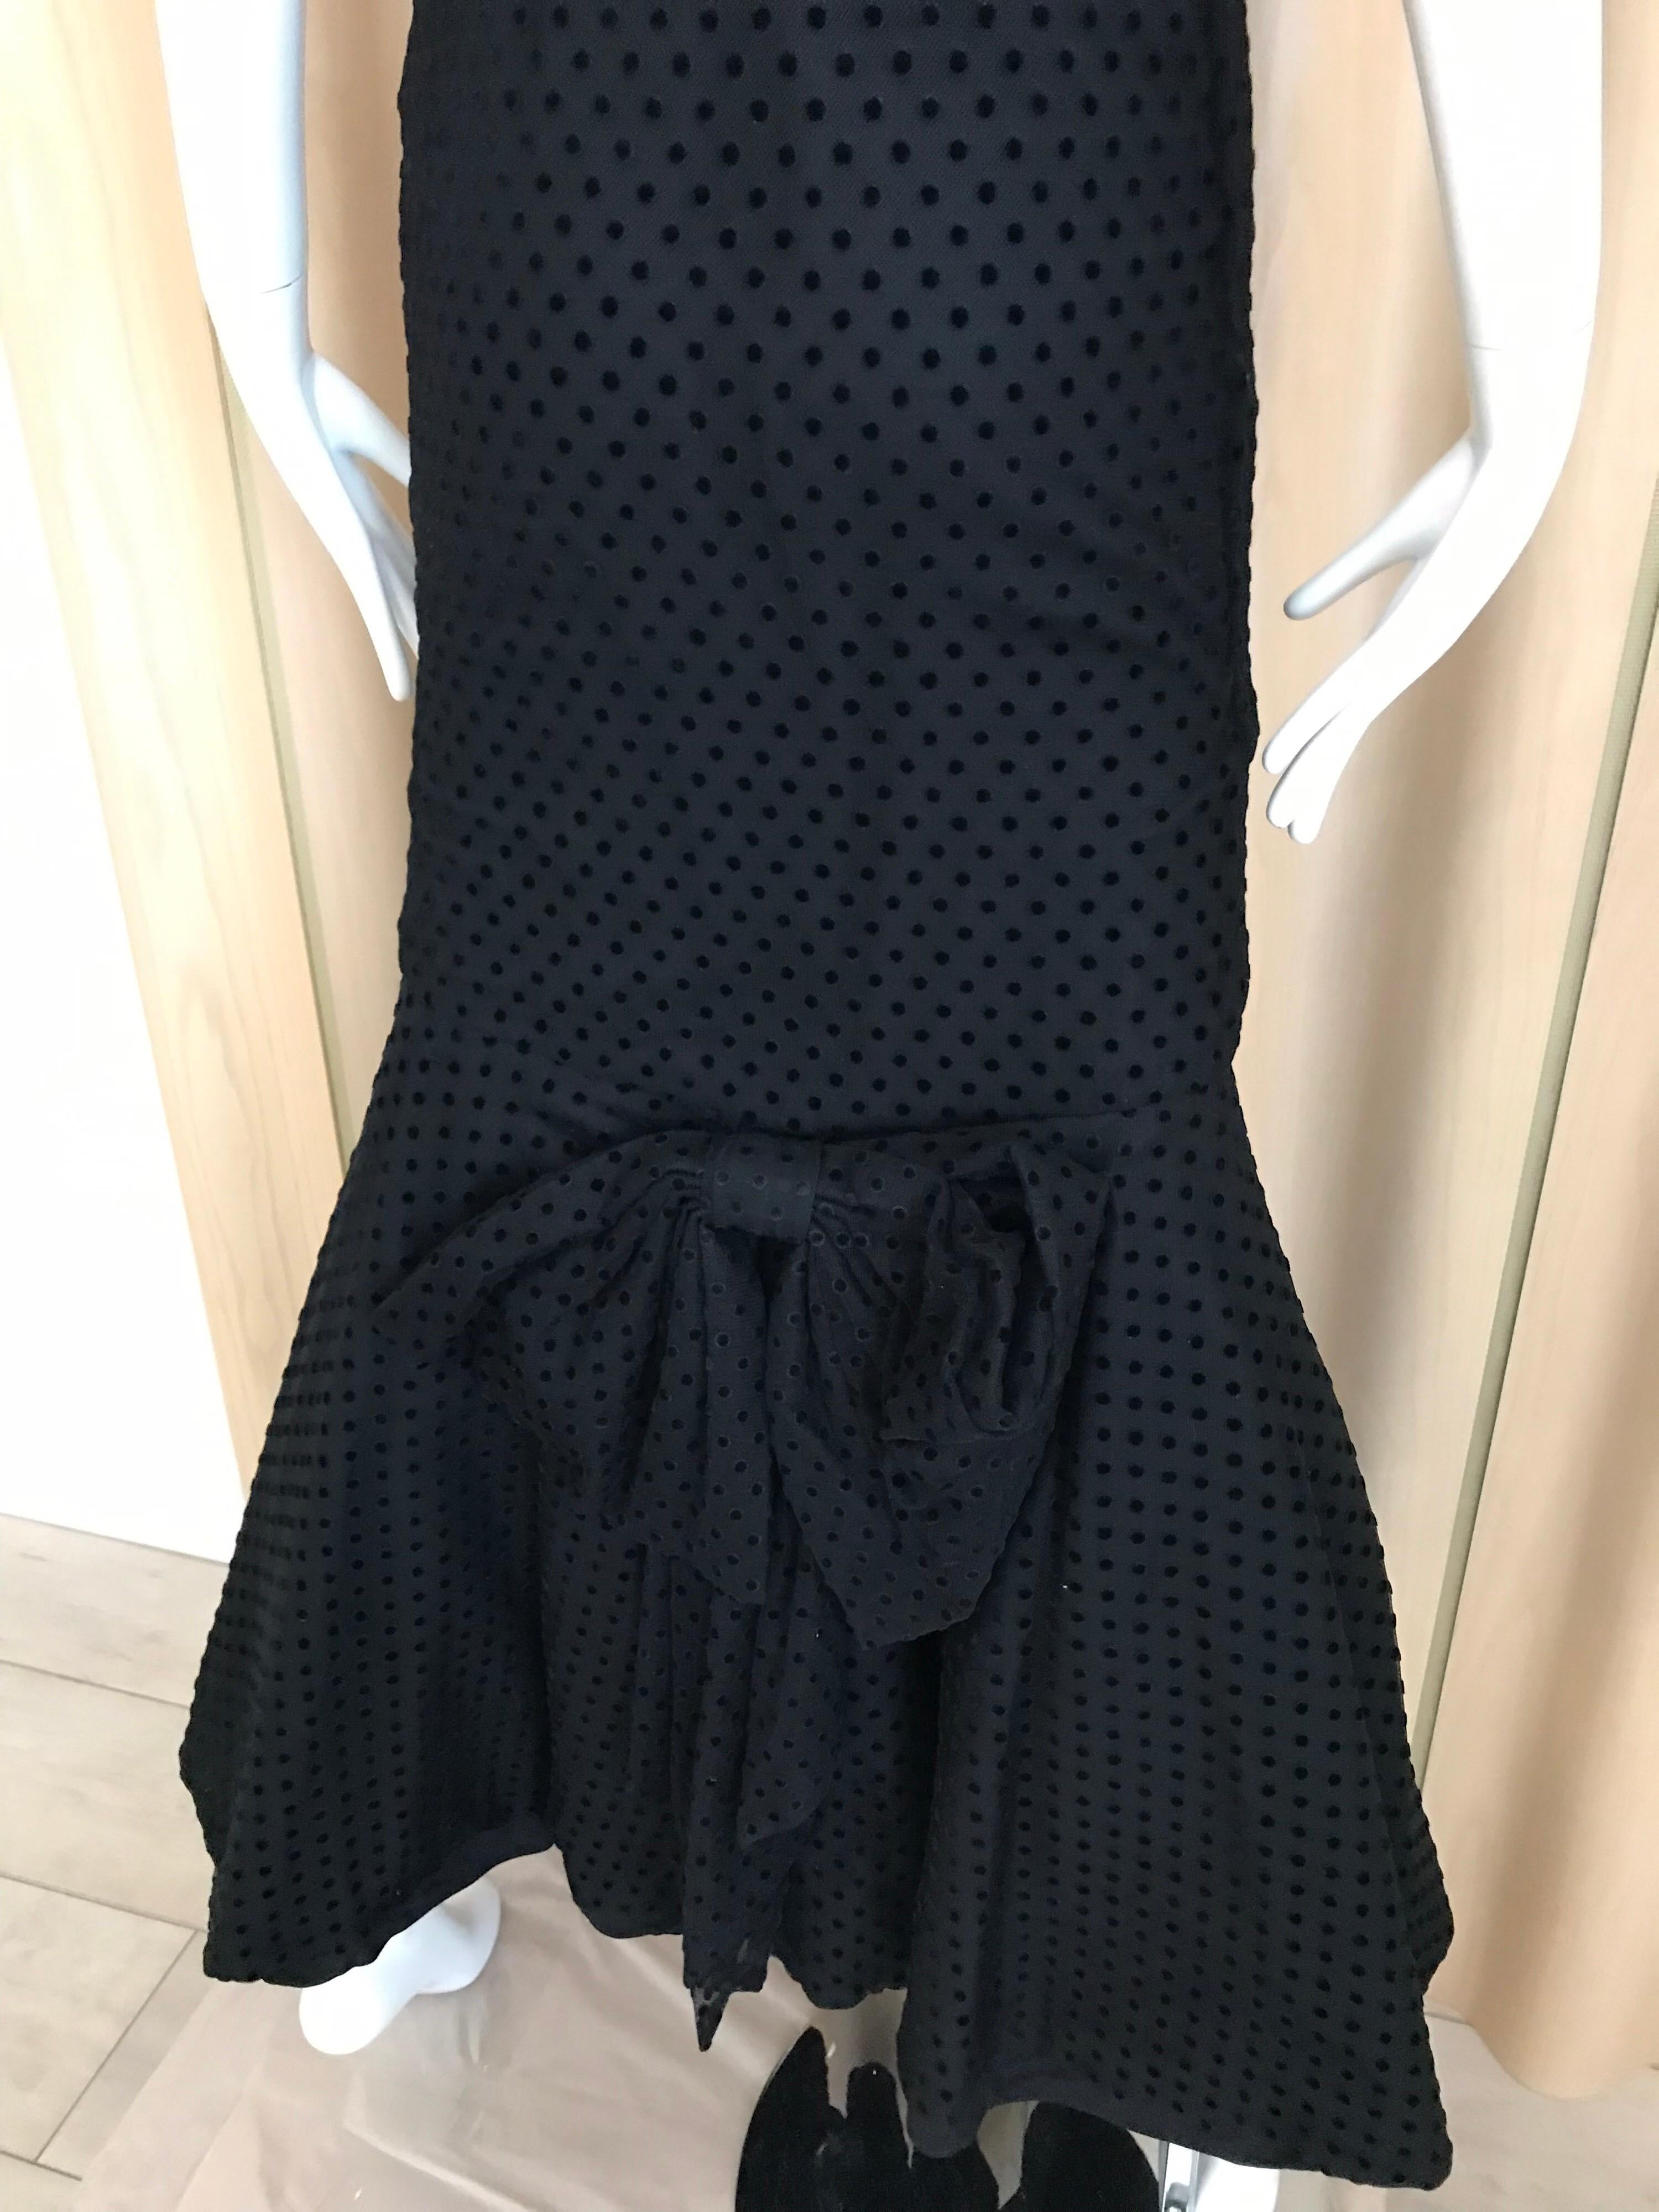 Christian Dior Black Net Dress with Velvet Dot Dress 6